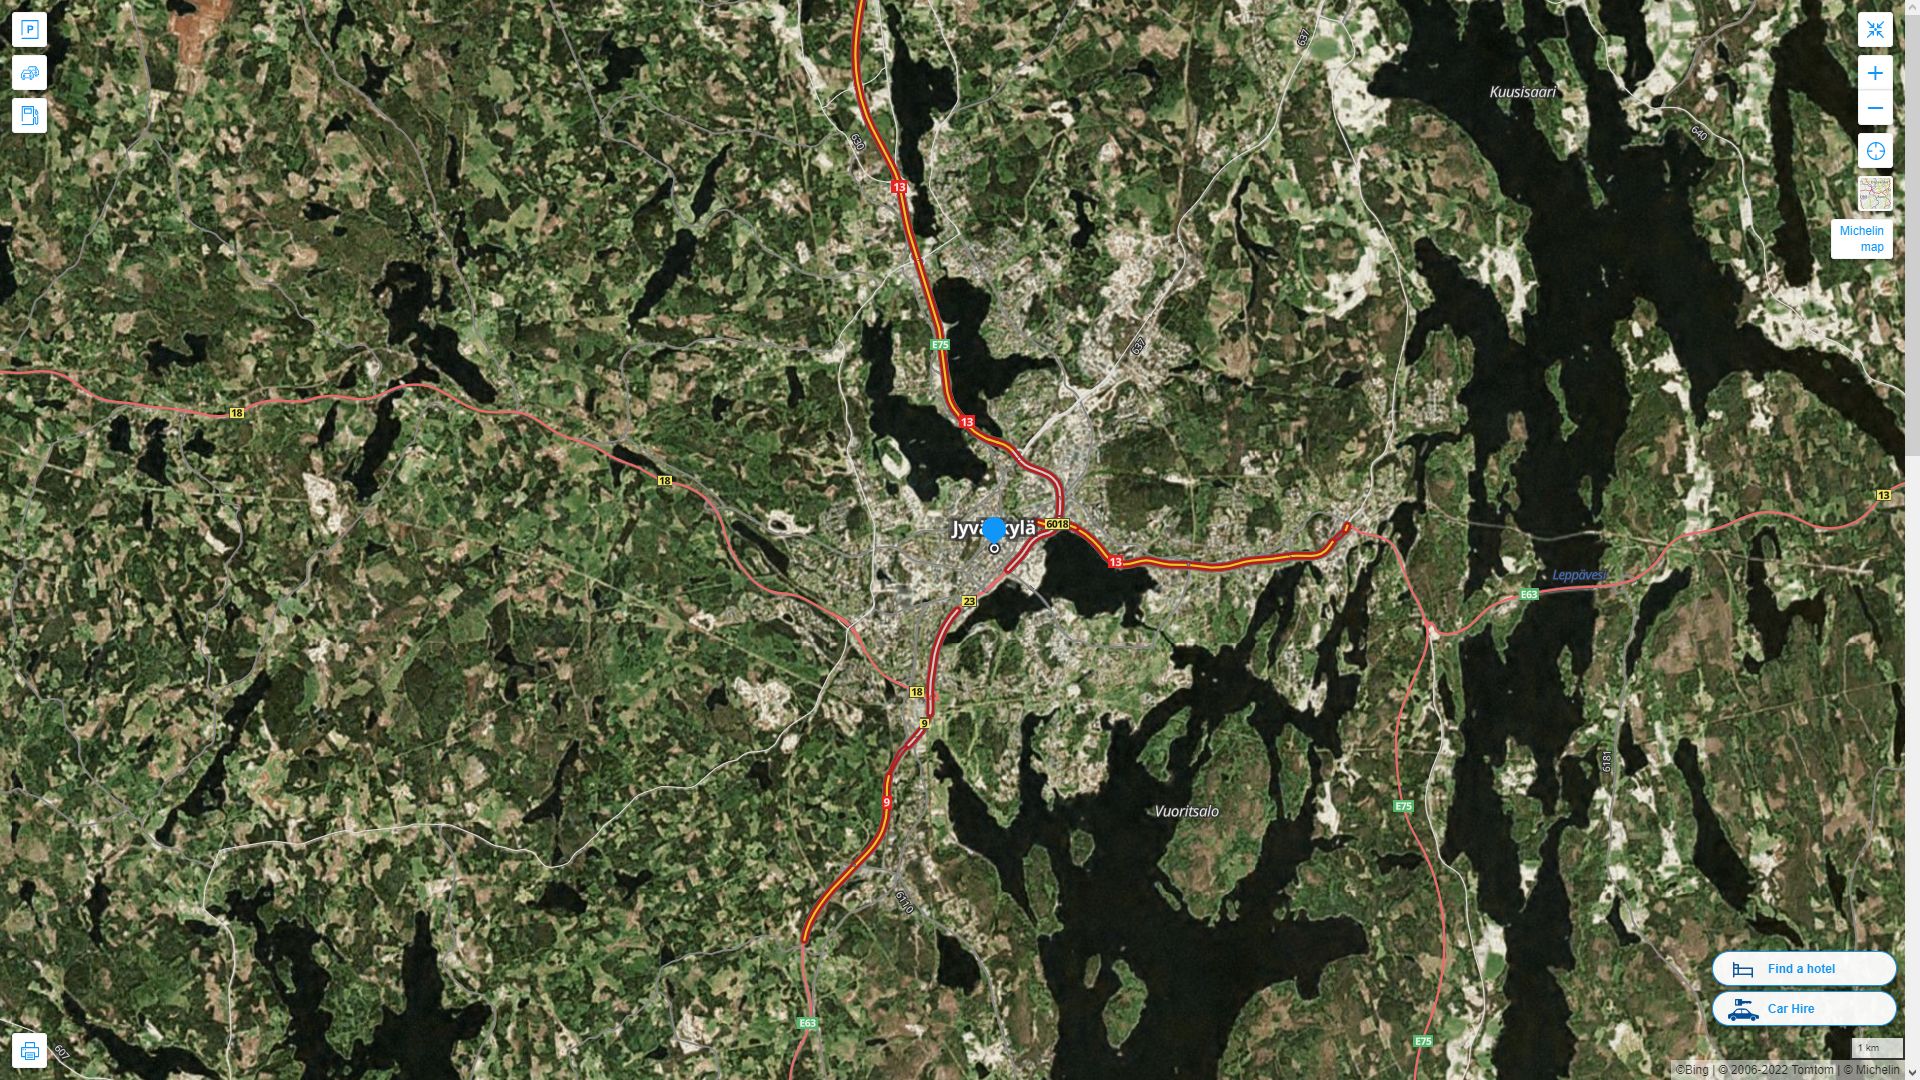 Jyvaskyla Finlande Autoroute et carte routiere avec vue satellite